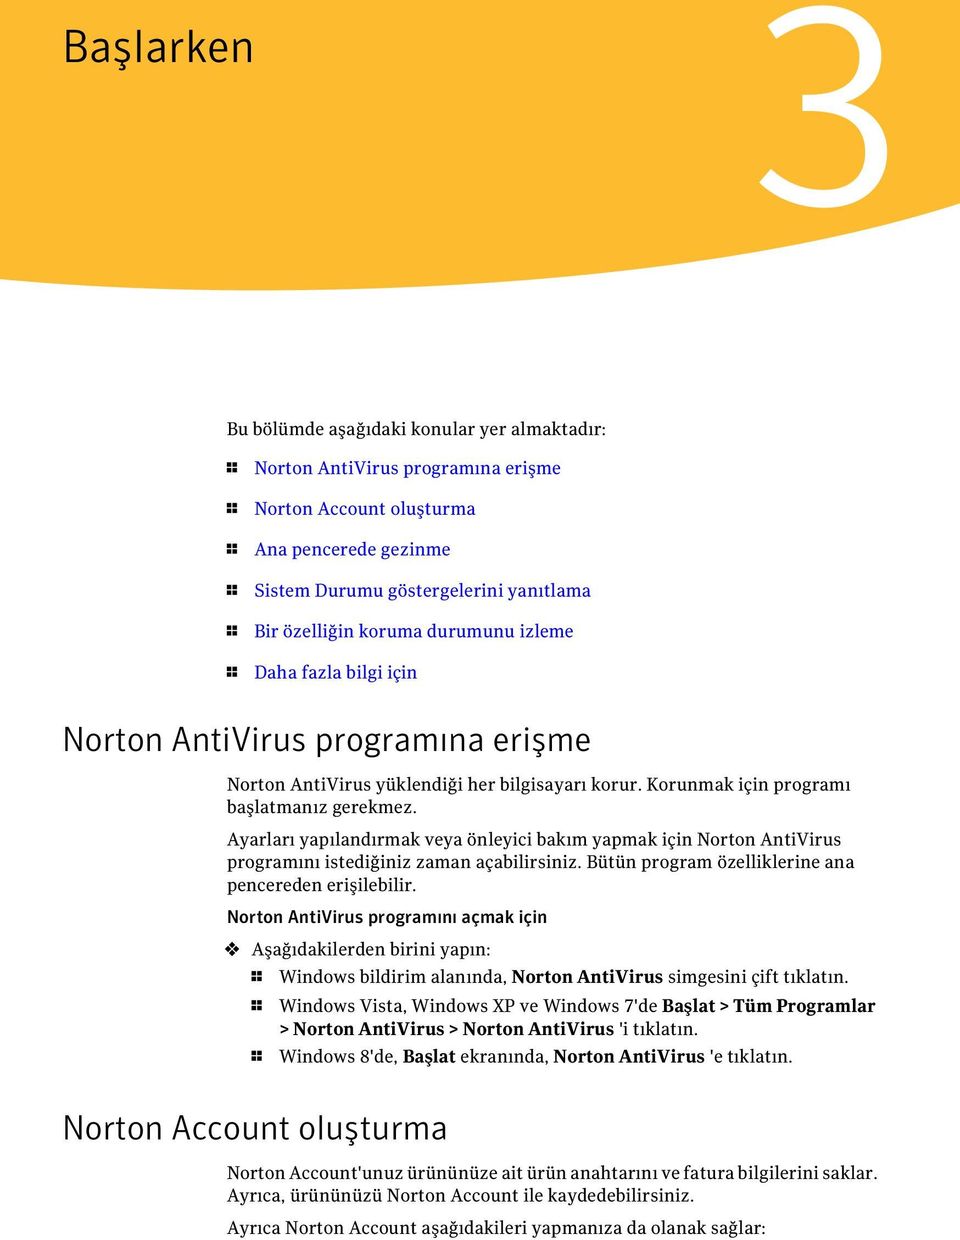 Ayarları yapılandırmak veya önleyici bakım yapmak için Norton AntiVirus programını istediğiniz zaman açabilirsiniz. Bütün program özelliklerine ana pencereden erişilebilir.